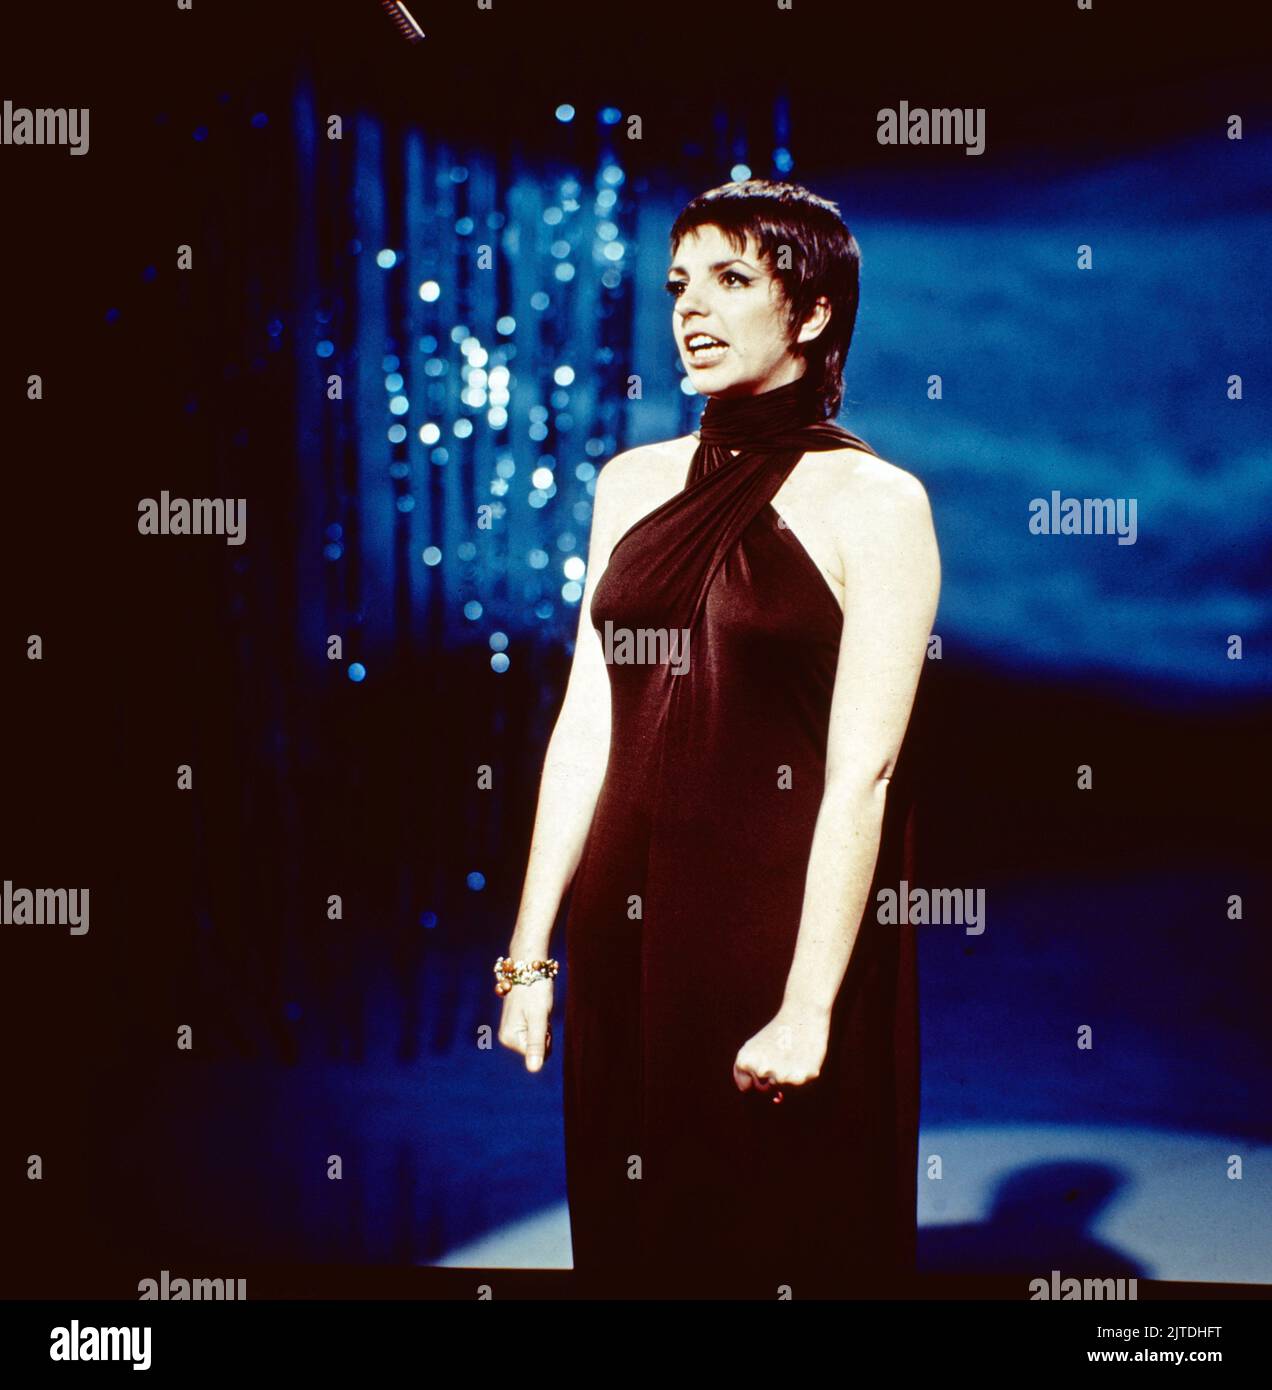 Liza Minelli, amerikanische Sängerin und Schauspielerin, hier bei einem Auftritt in Deutschland, 1987. Liza Minelli, amerikanische Schauspielerin und Sängerin, Performance in Deutschland, 1987. Stockfoto